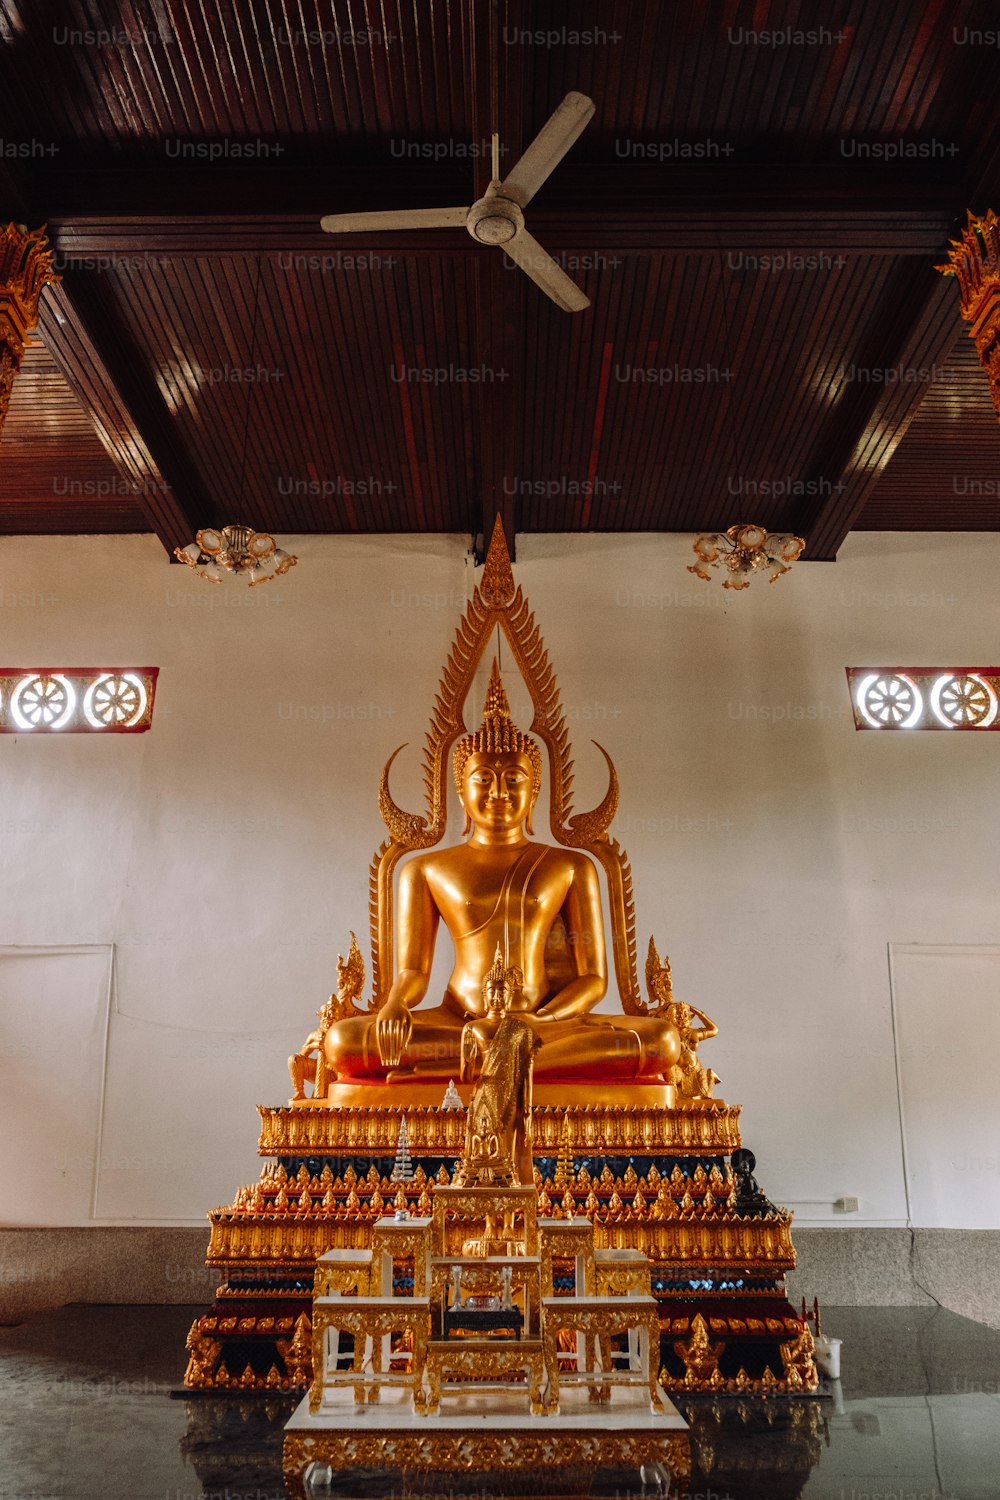 Une grande statue de Bouddha doré assise dans une pièce